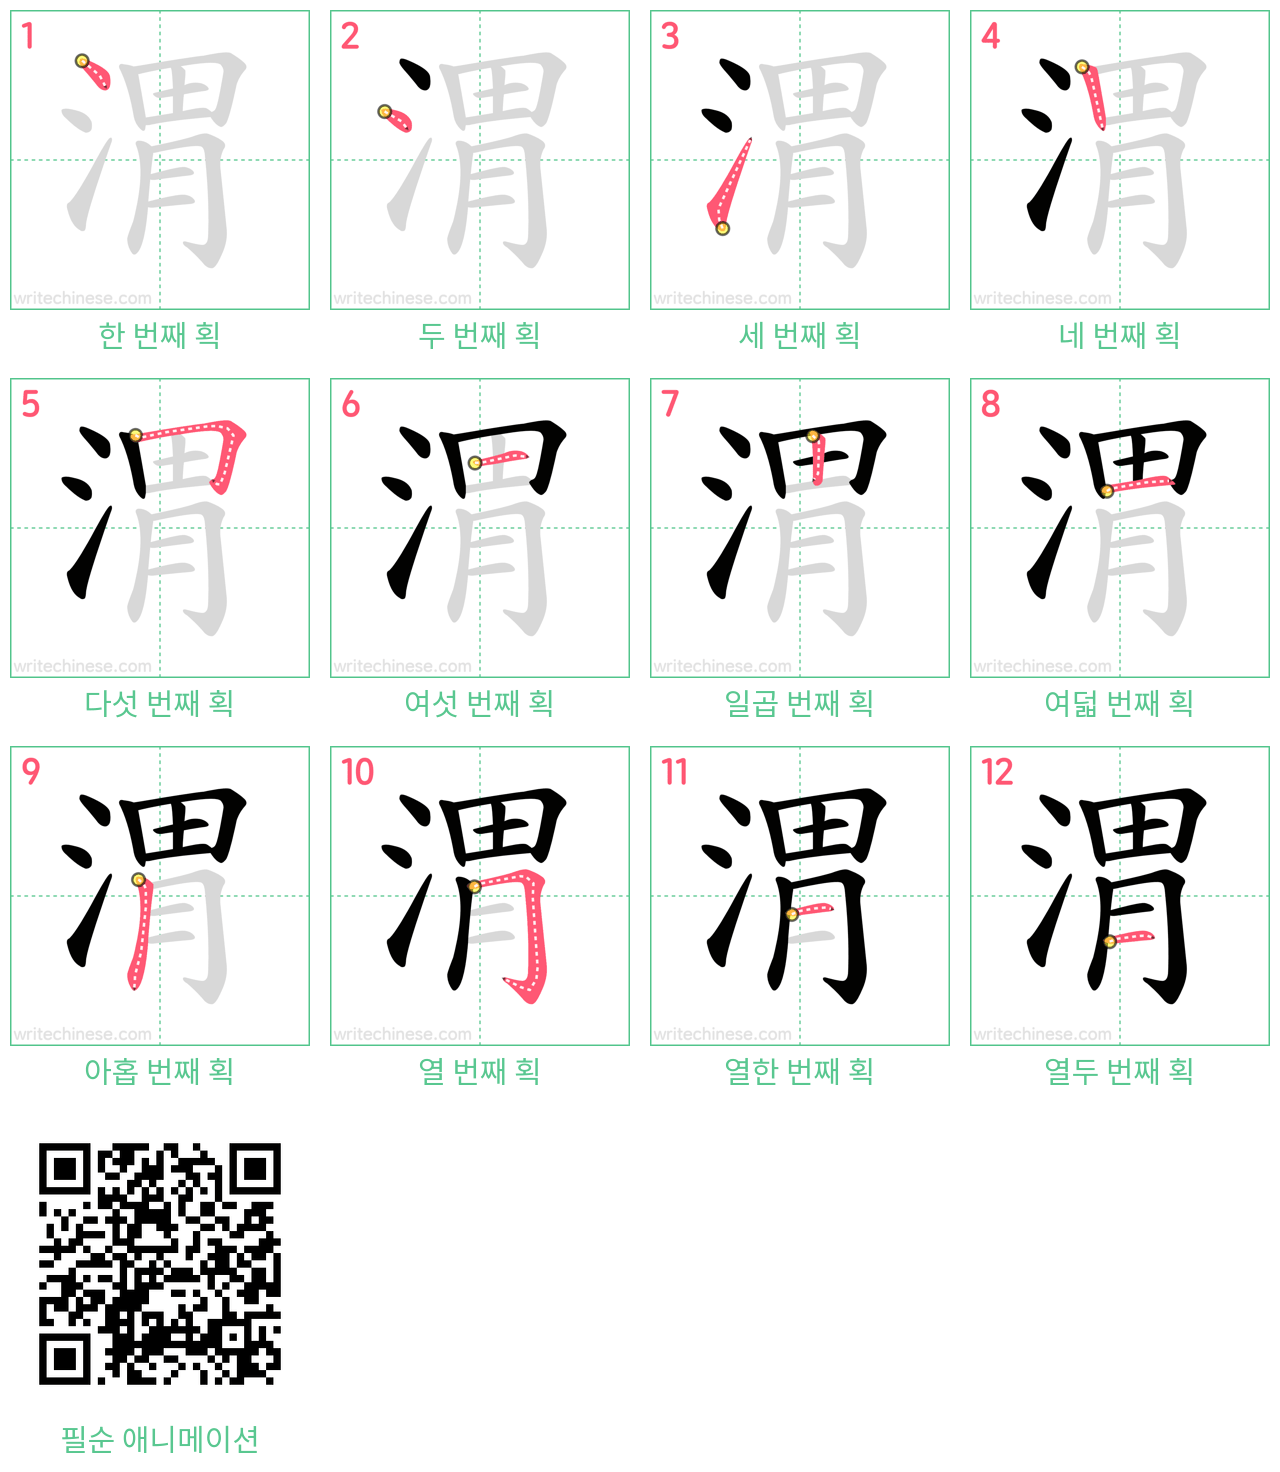 渭 step-by-step stroke order diagrams